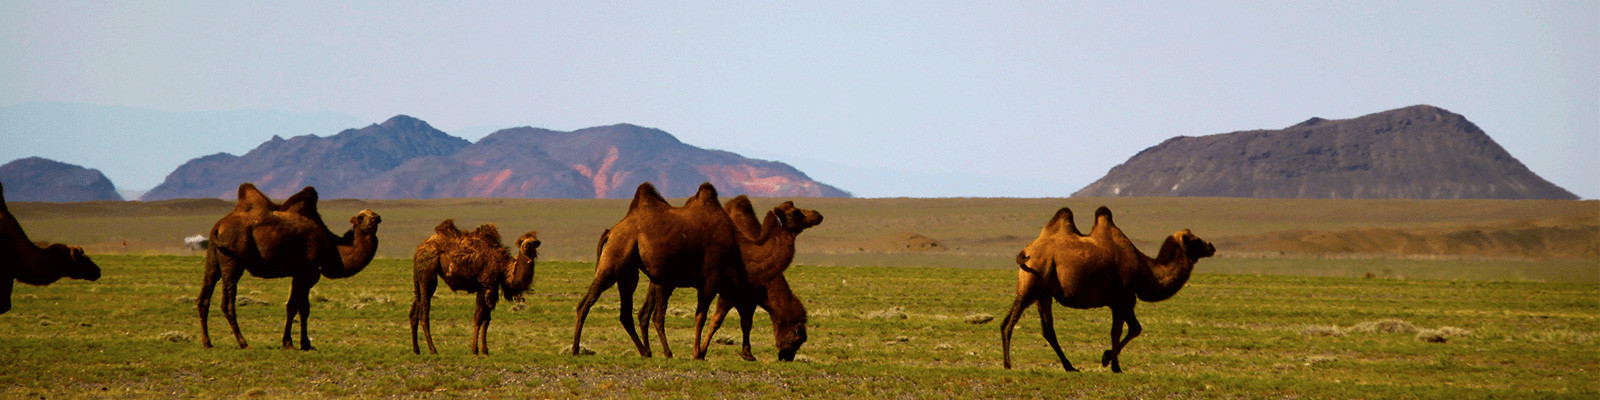 Voyage Mongolie - Expérience solidaire et responsable pour un tourisme durable en Mongolie